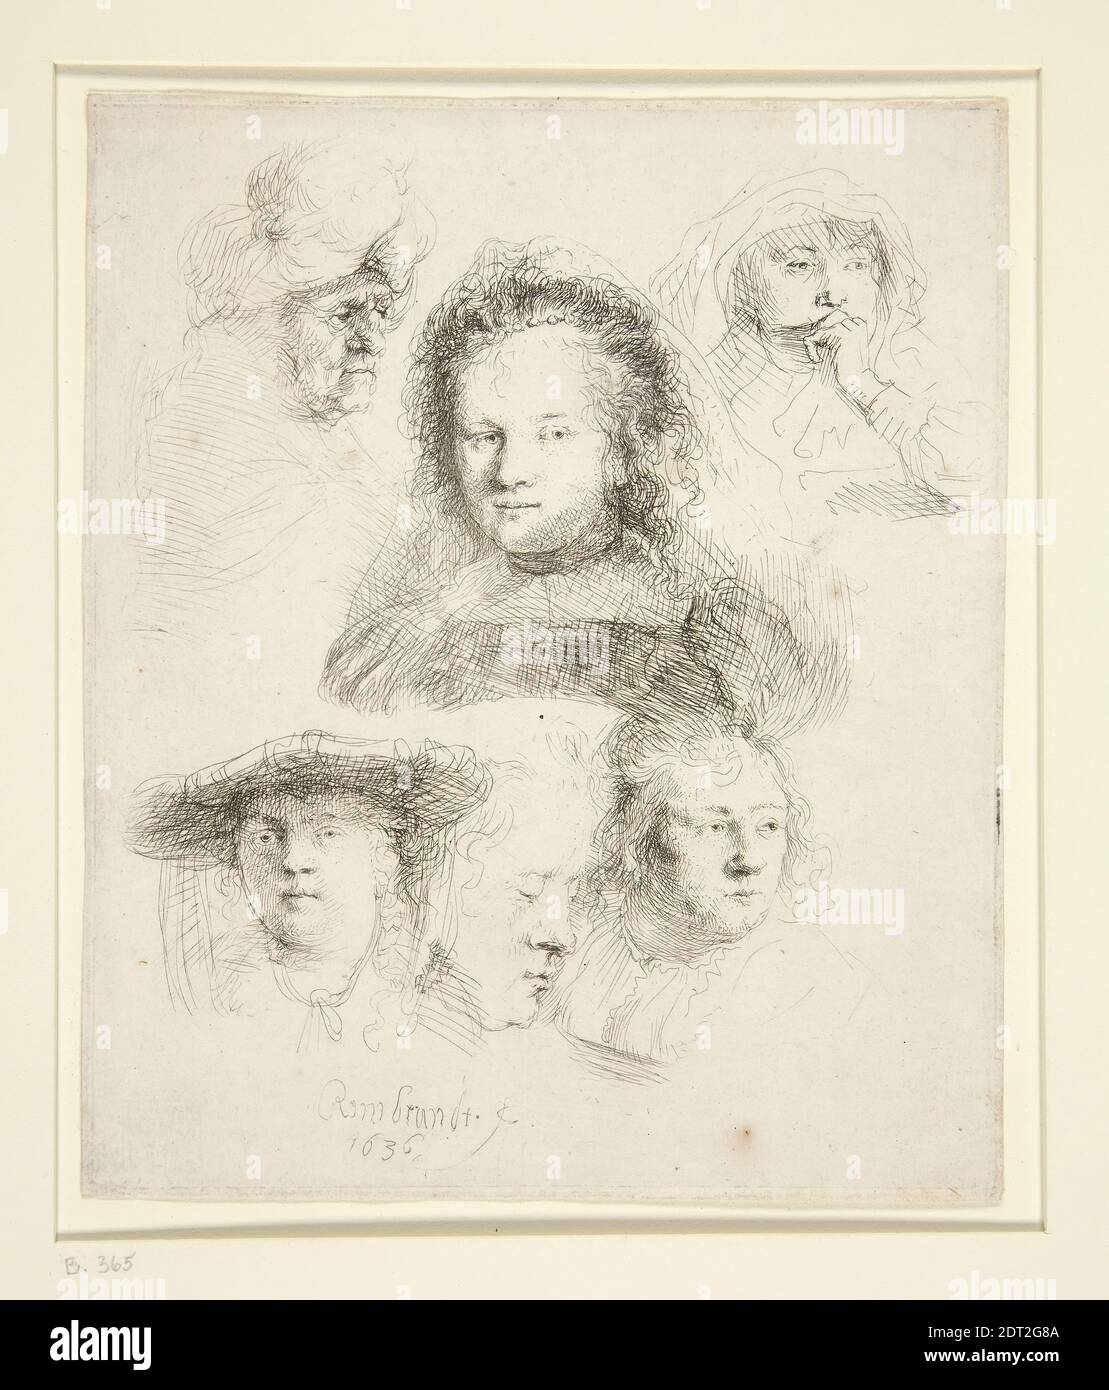 Artista: Rembrandt (Rembrandt van Rijn), Olandese, 1606–1669, Studi del Capo di Saskia e altri, Etching, 15.1 × 12.6 cm (5 15/16 × 4 15/16 in.), Made in the Netherlands, Dutch, XVII secolo, opere su carta - stampe Foto Stock